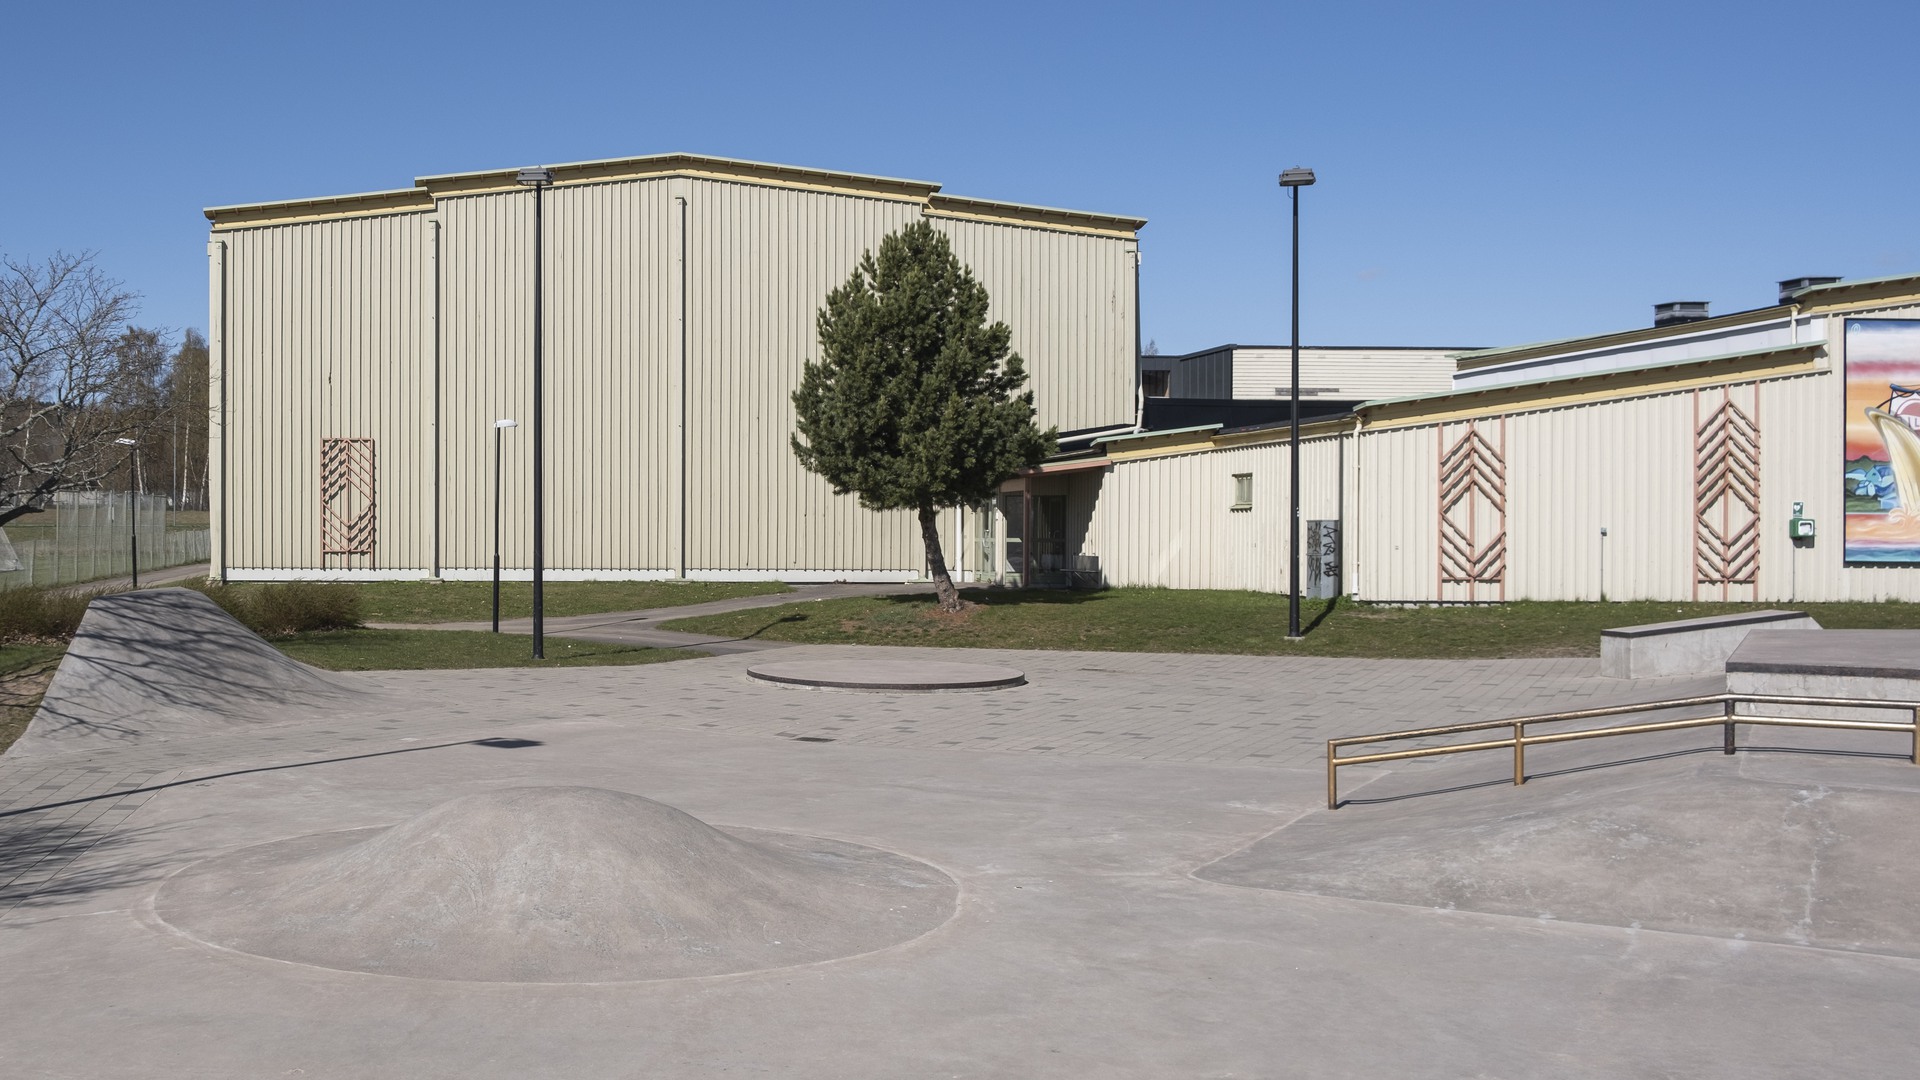 Actionparken vid Guldkrokshallen i Hjo. En grå betongyta med gupp, formationer och räcken som går att åka skateboard eller sparkcykel över. I bakgrunden syns Guldkrokshallen som är en ljusgul byggnad med träfasad.